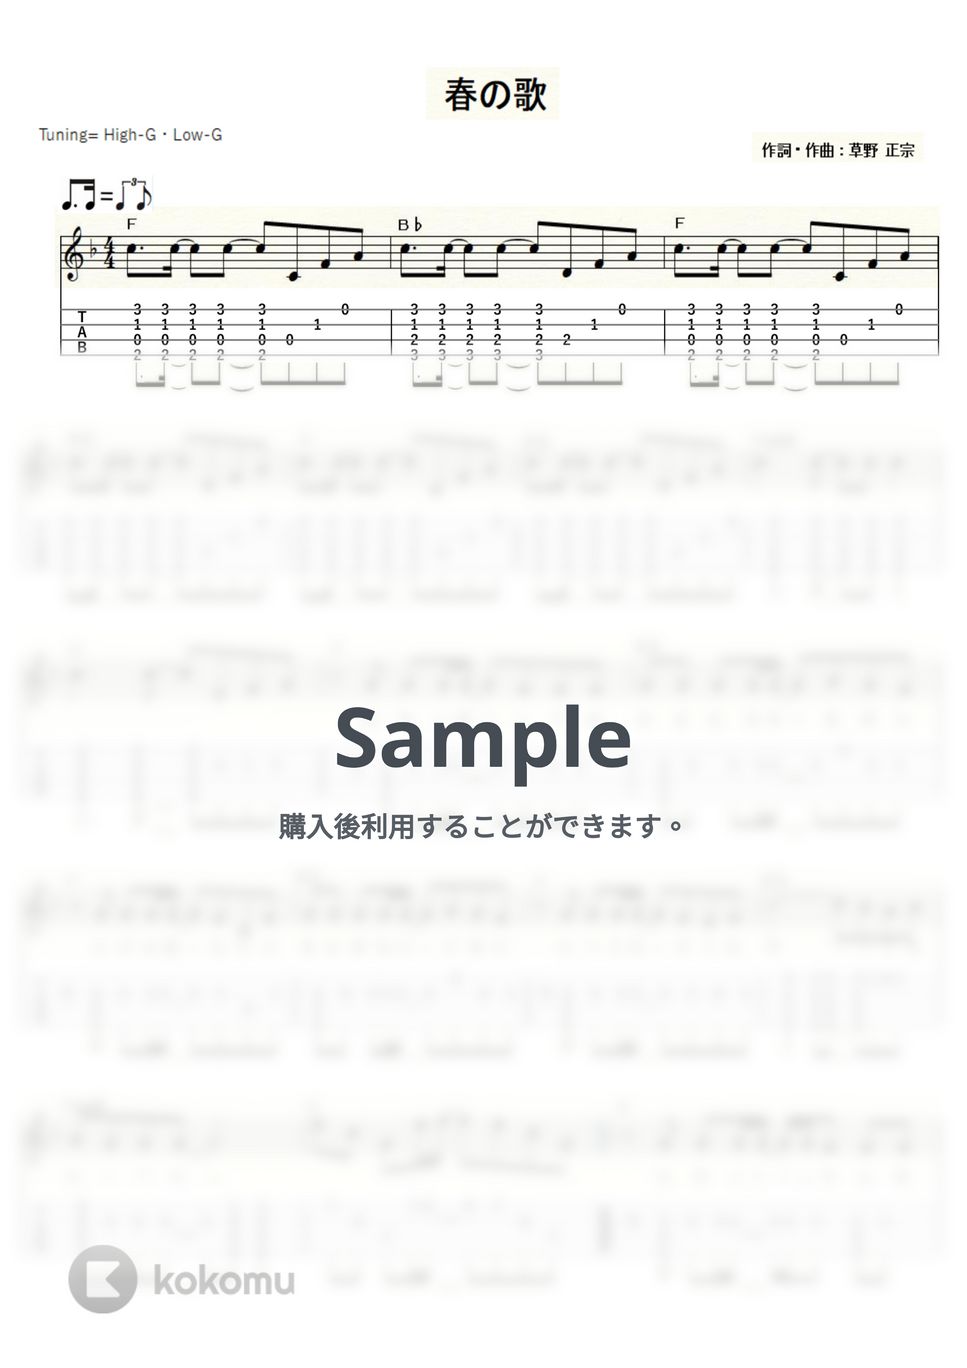 スピッツ - 春の歌 (ｳｸﾚﾚｿﾛ/High-G・Low-G/中級) by ukulelepapa